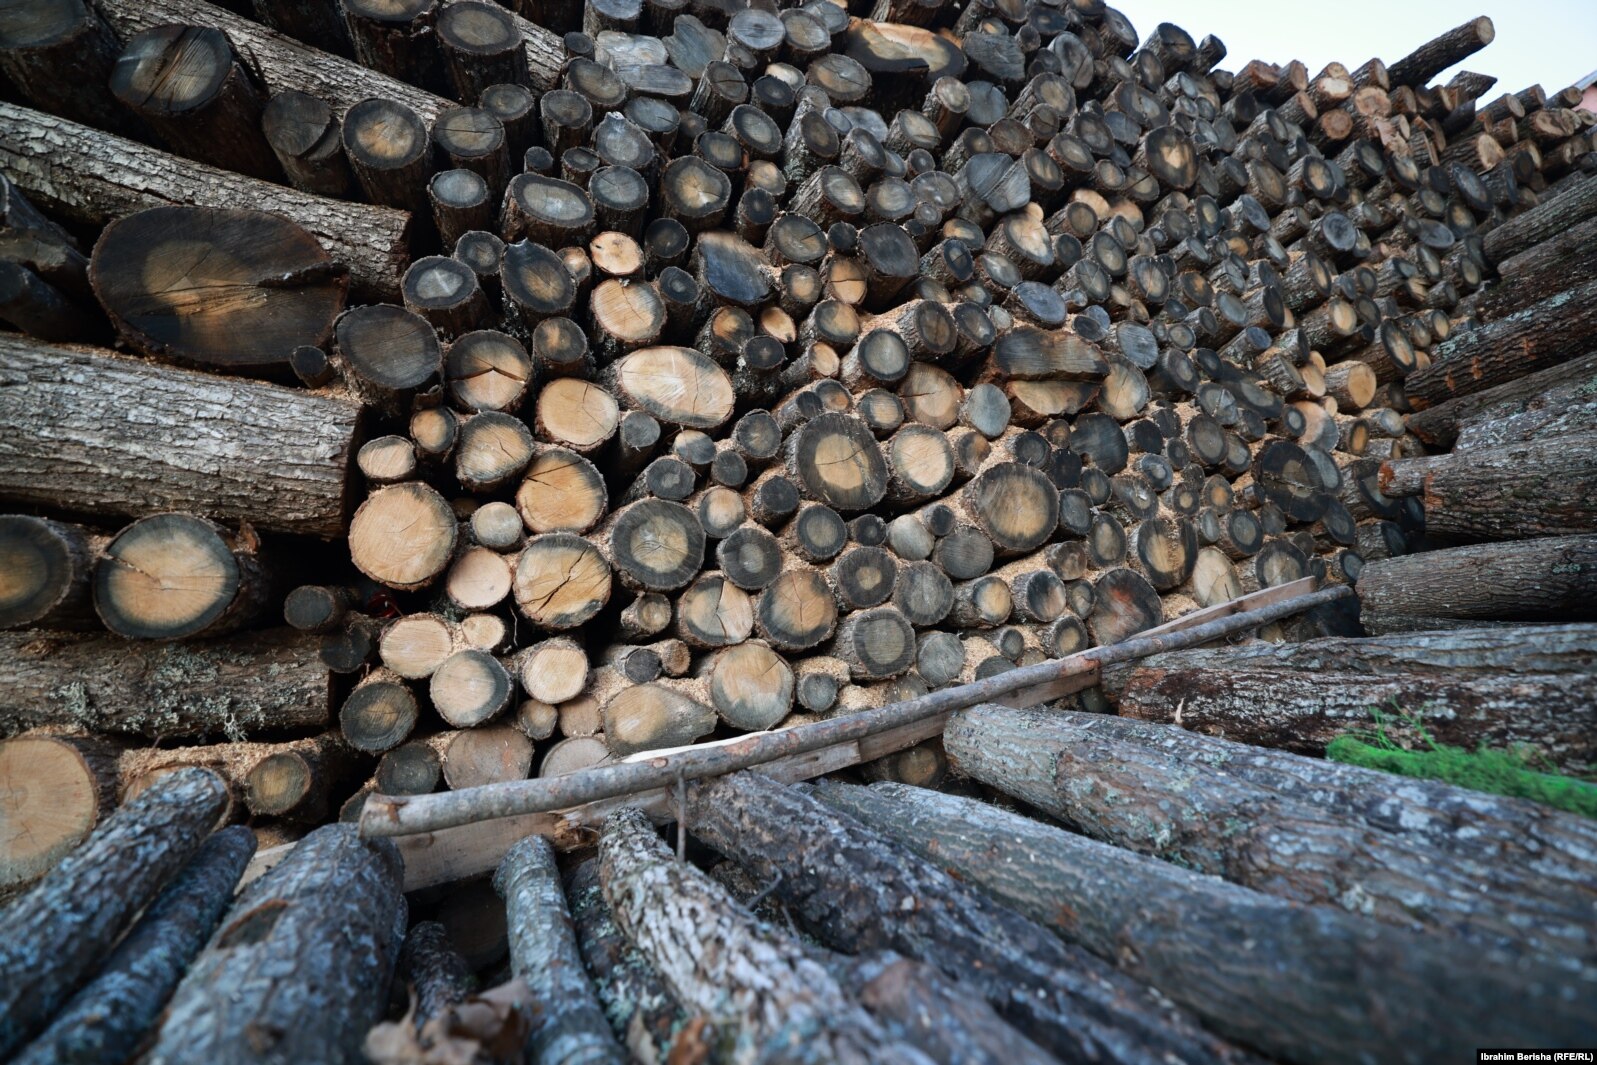 Dru të ekspozuara për shitje në një prej tregjeve në Prishtinë. Një metër dru aktualisht kushton 70 deri në 80 euro, krahasuar me 40 euro sa ka qenë vitin e kaluar.